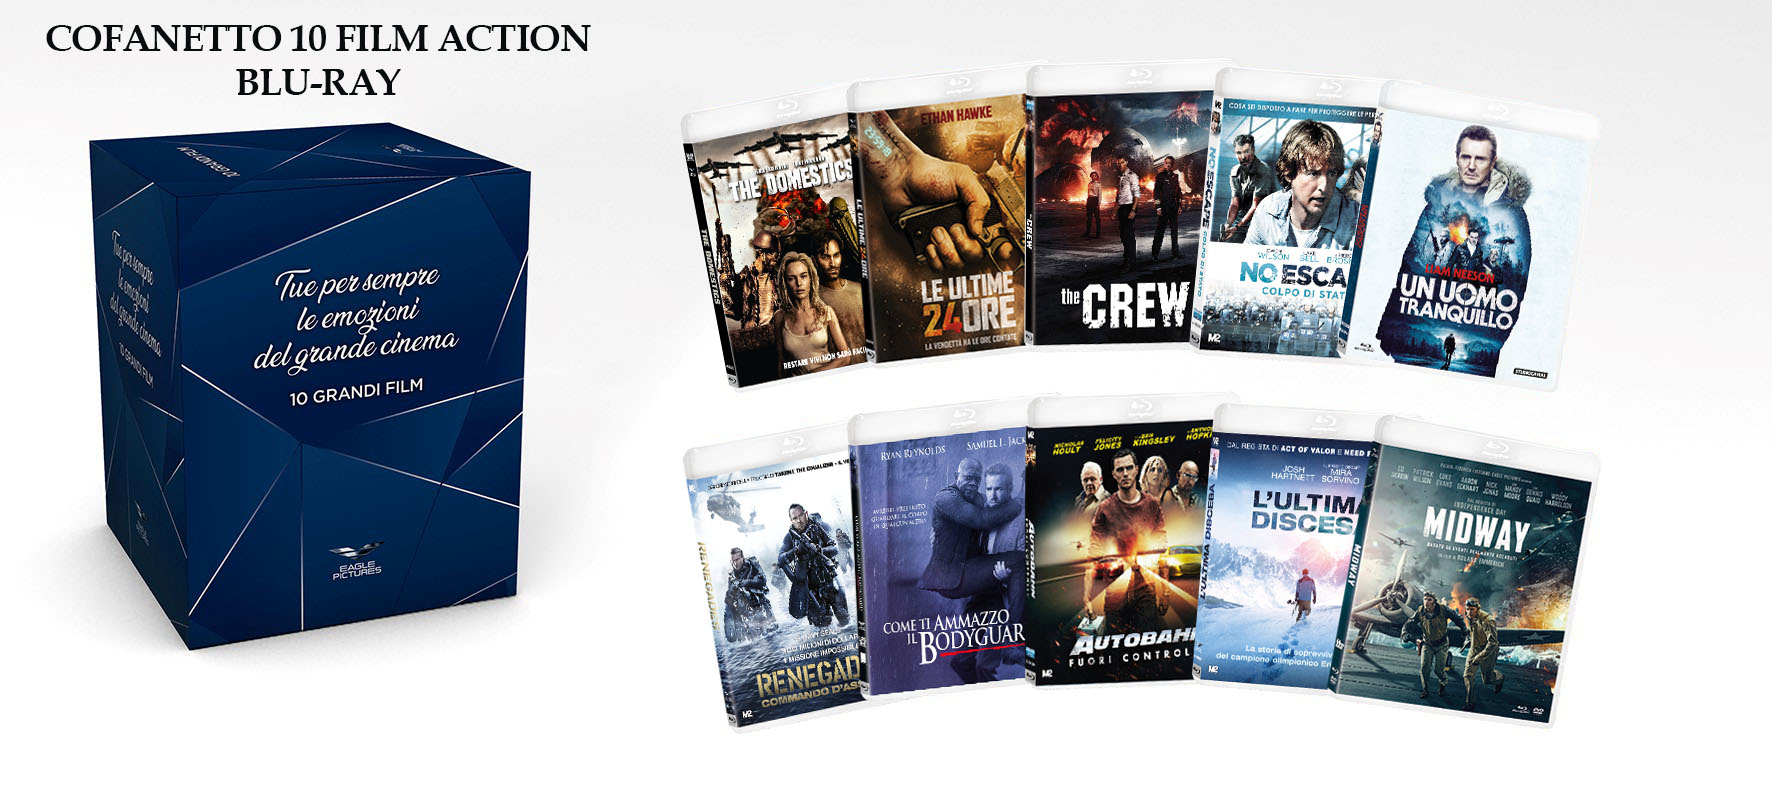 Blu-Ray Action Cofanetto (10 Blu-Ray) NUOVO SIGILLATO, EDIZIONE DEL 28/10/2021 SUBITO DISPONIBILE